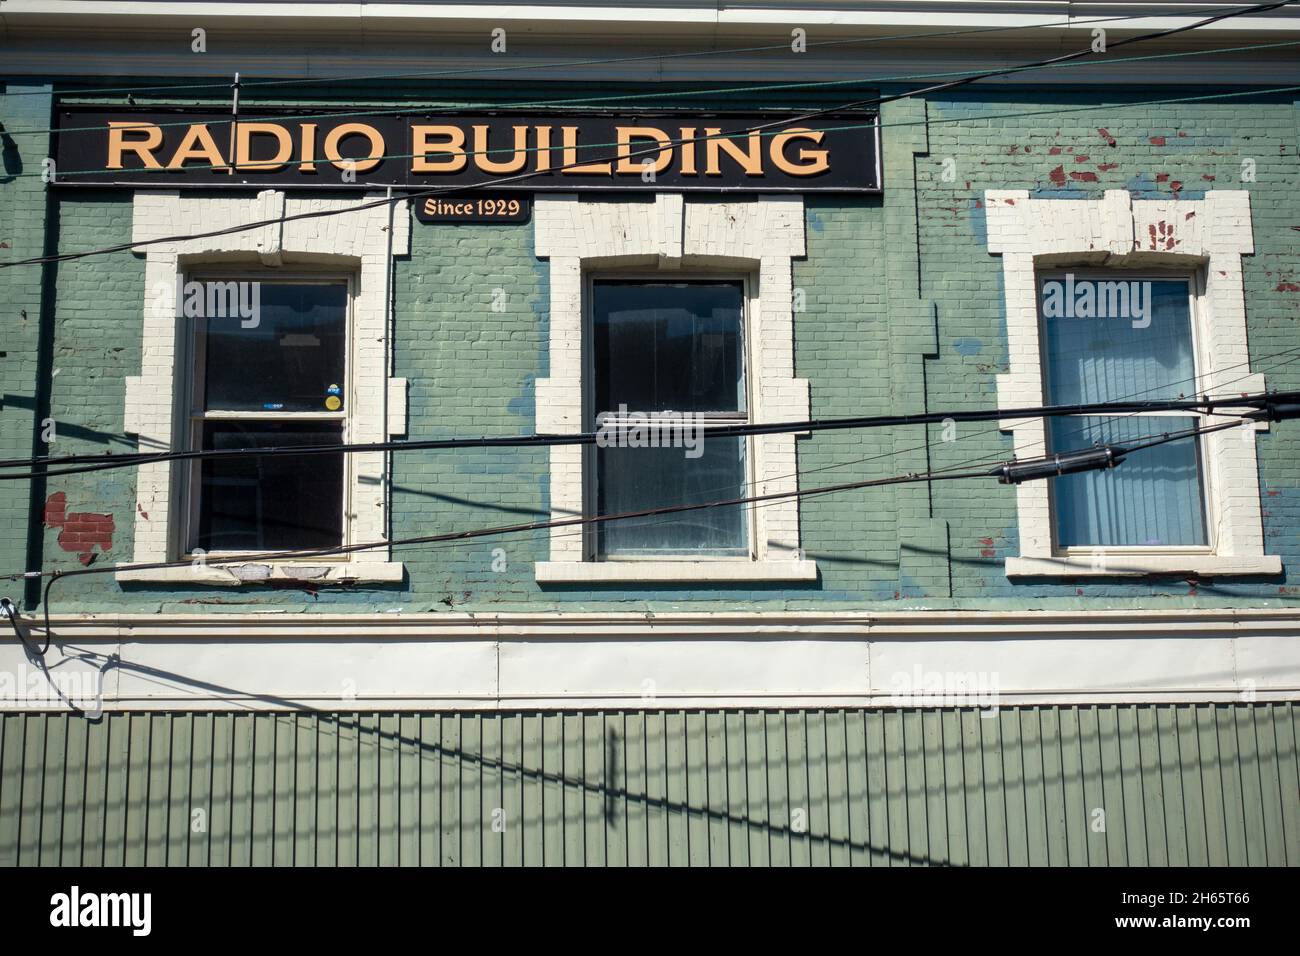 Edificio de Radio Sydney Nueva Escocia Canadá Estación de Radio Local Cape Breton Nueva Escocia Canadá Max FM 98,3 Estación de Radio establecida en 1929 Exterior Foto de stock